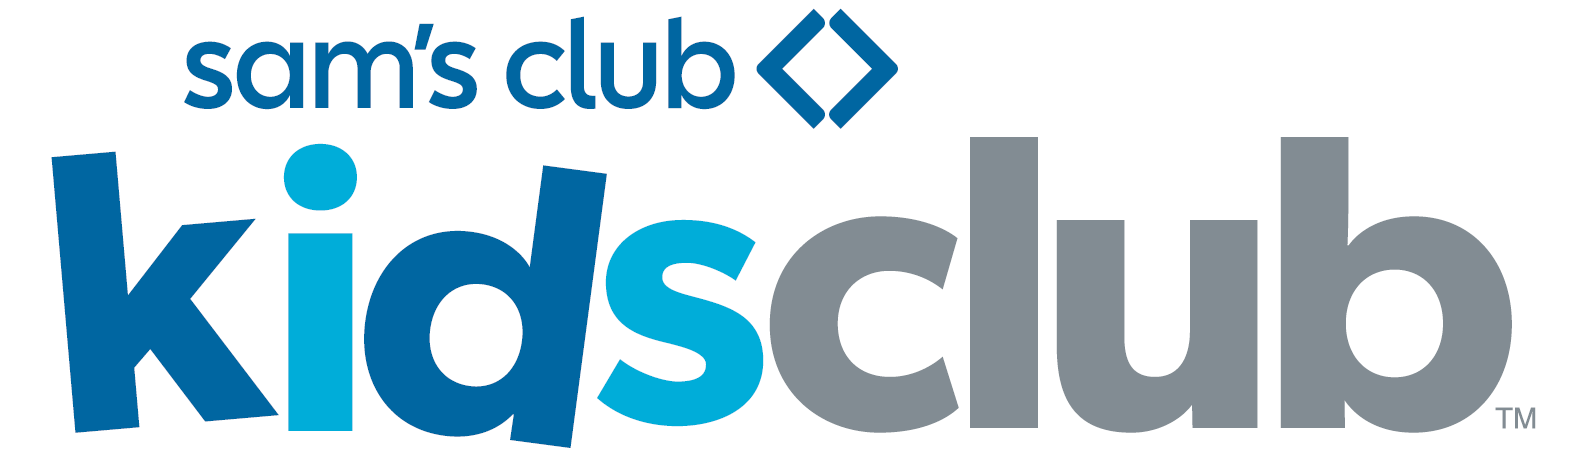 Sam's Club Kids Club logo | Bright Horizons